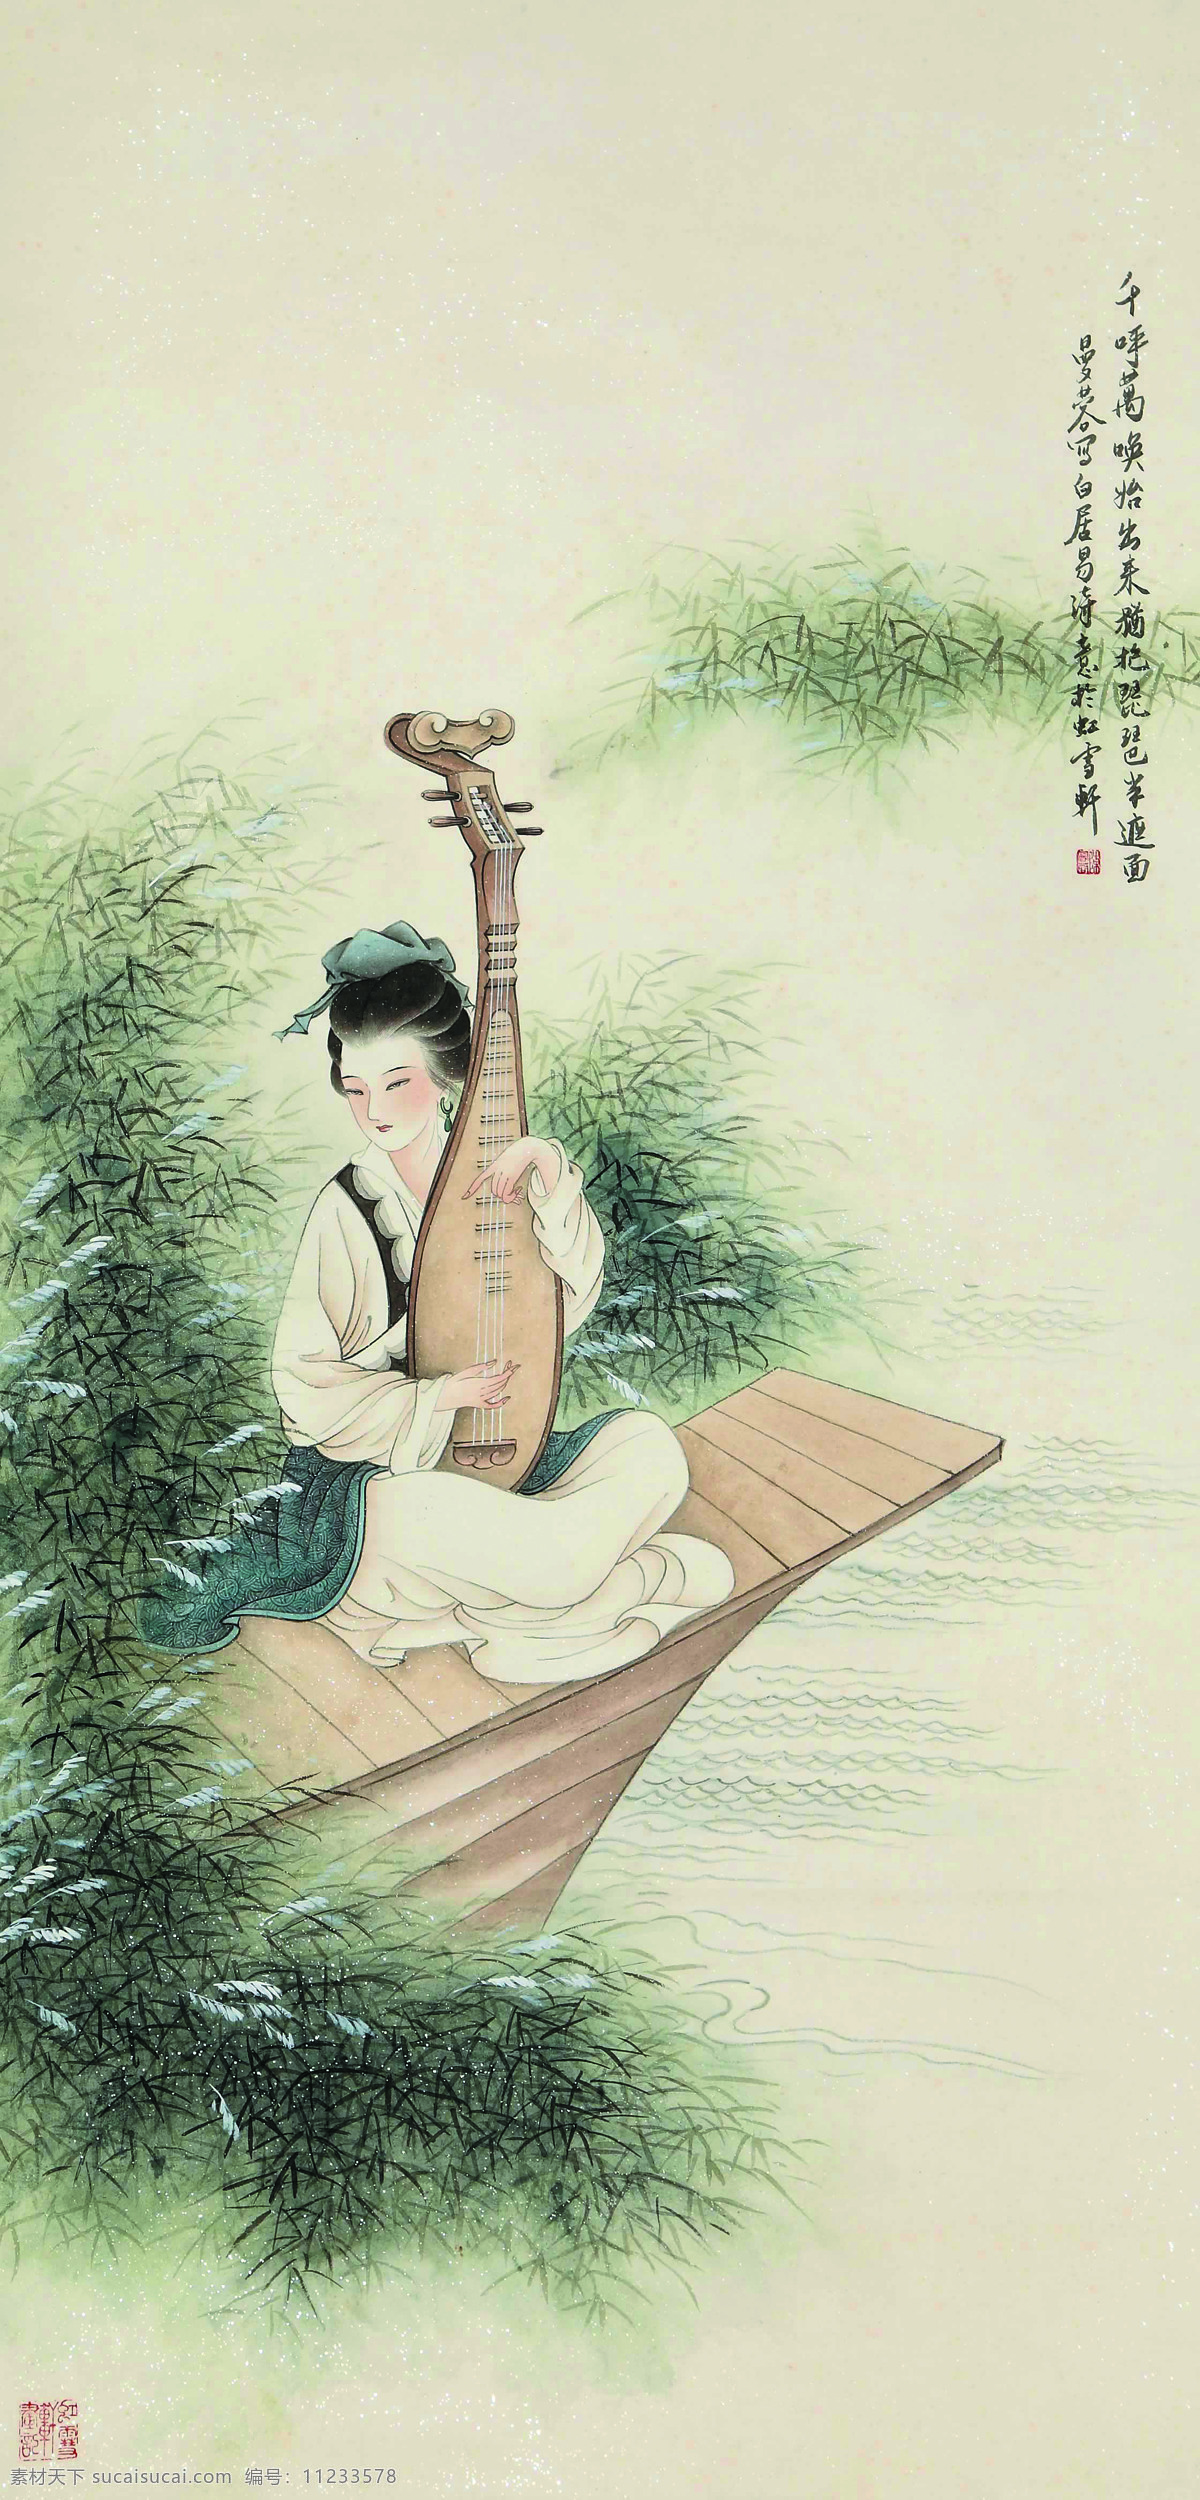 古代仕女图 美术 中国画 工笔画 人物画 女人 女子 仕女 丽人 湖泊 小船 芦苇 文化艺术 绘画书法